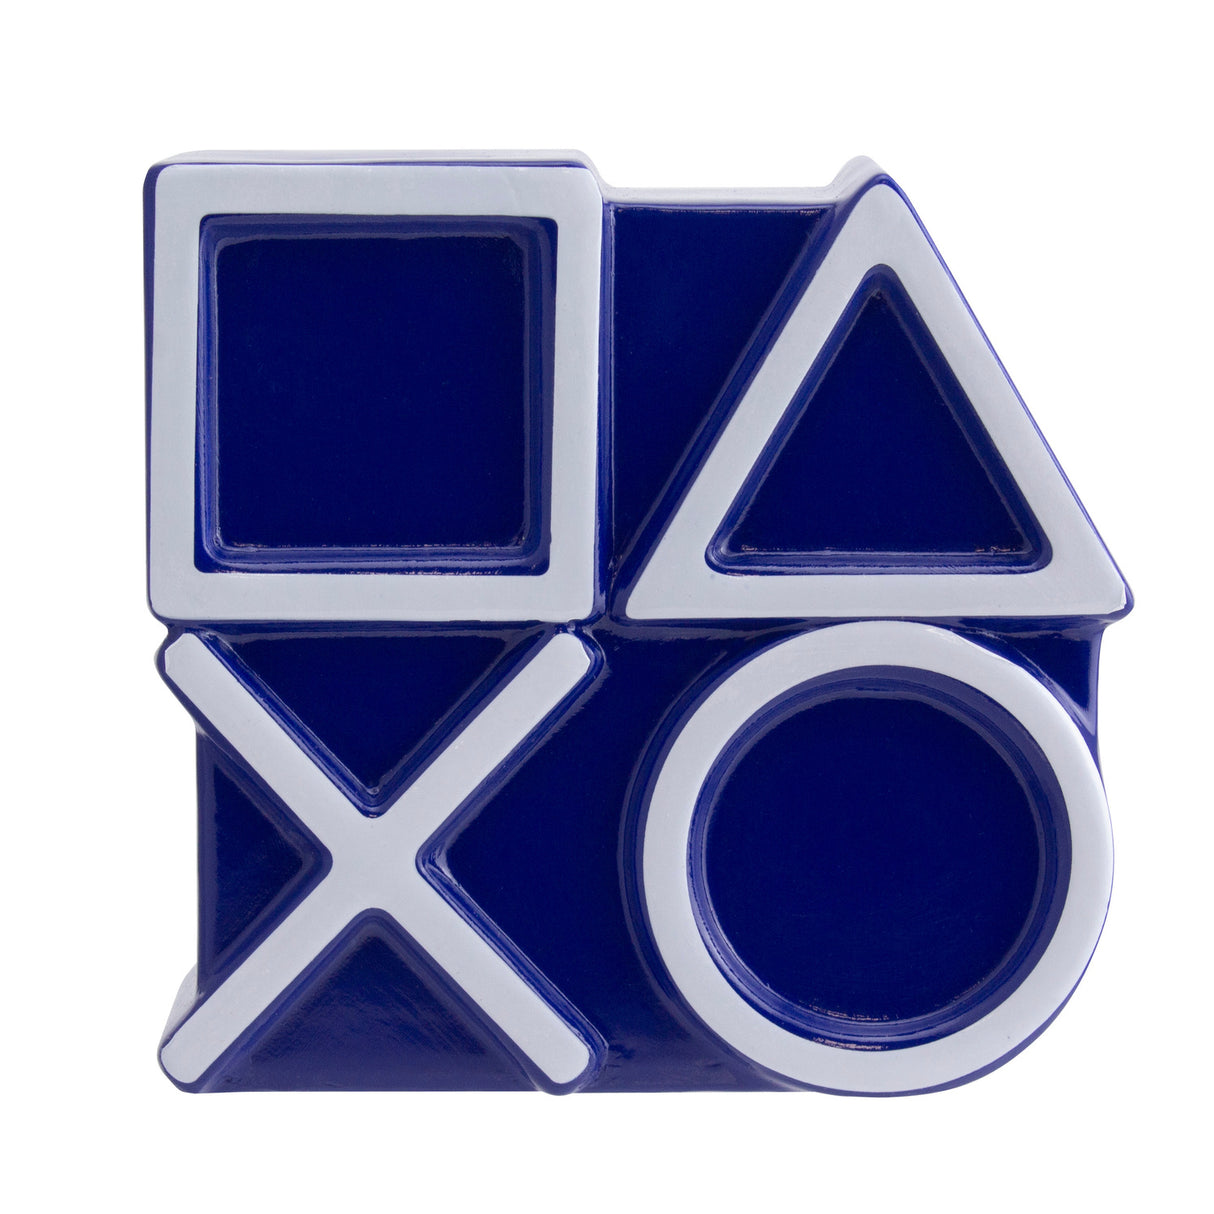 PlayStation Icons Spardose aus Keramik